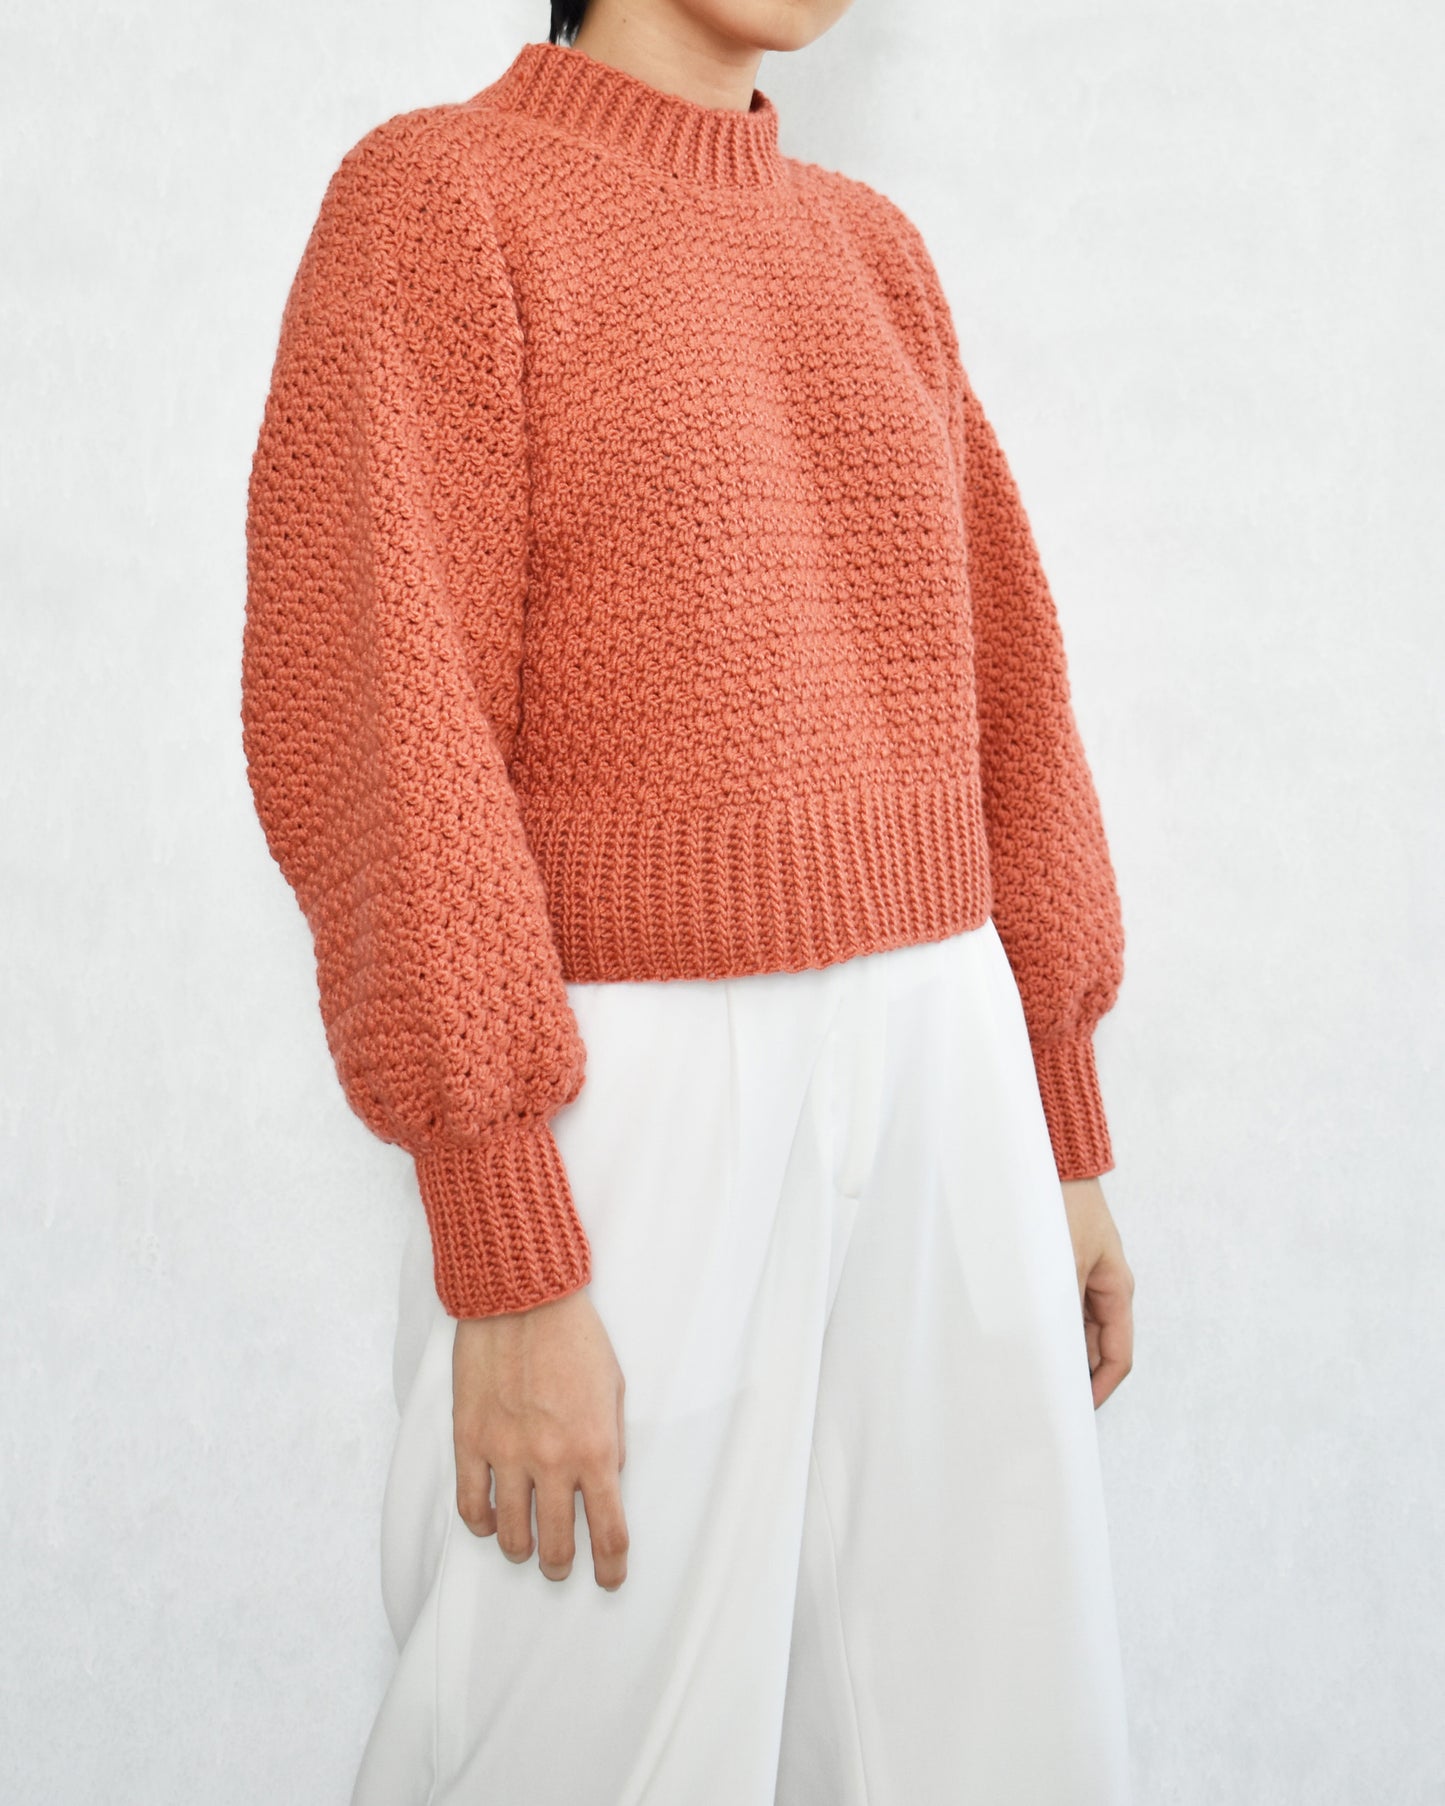 Sweater No.26 | Easy crochet pattern